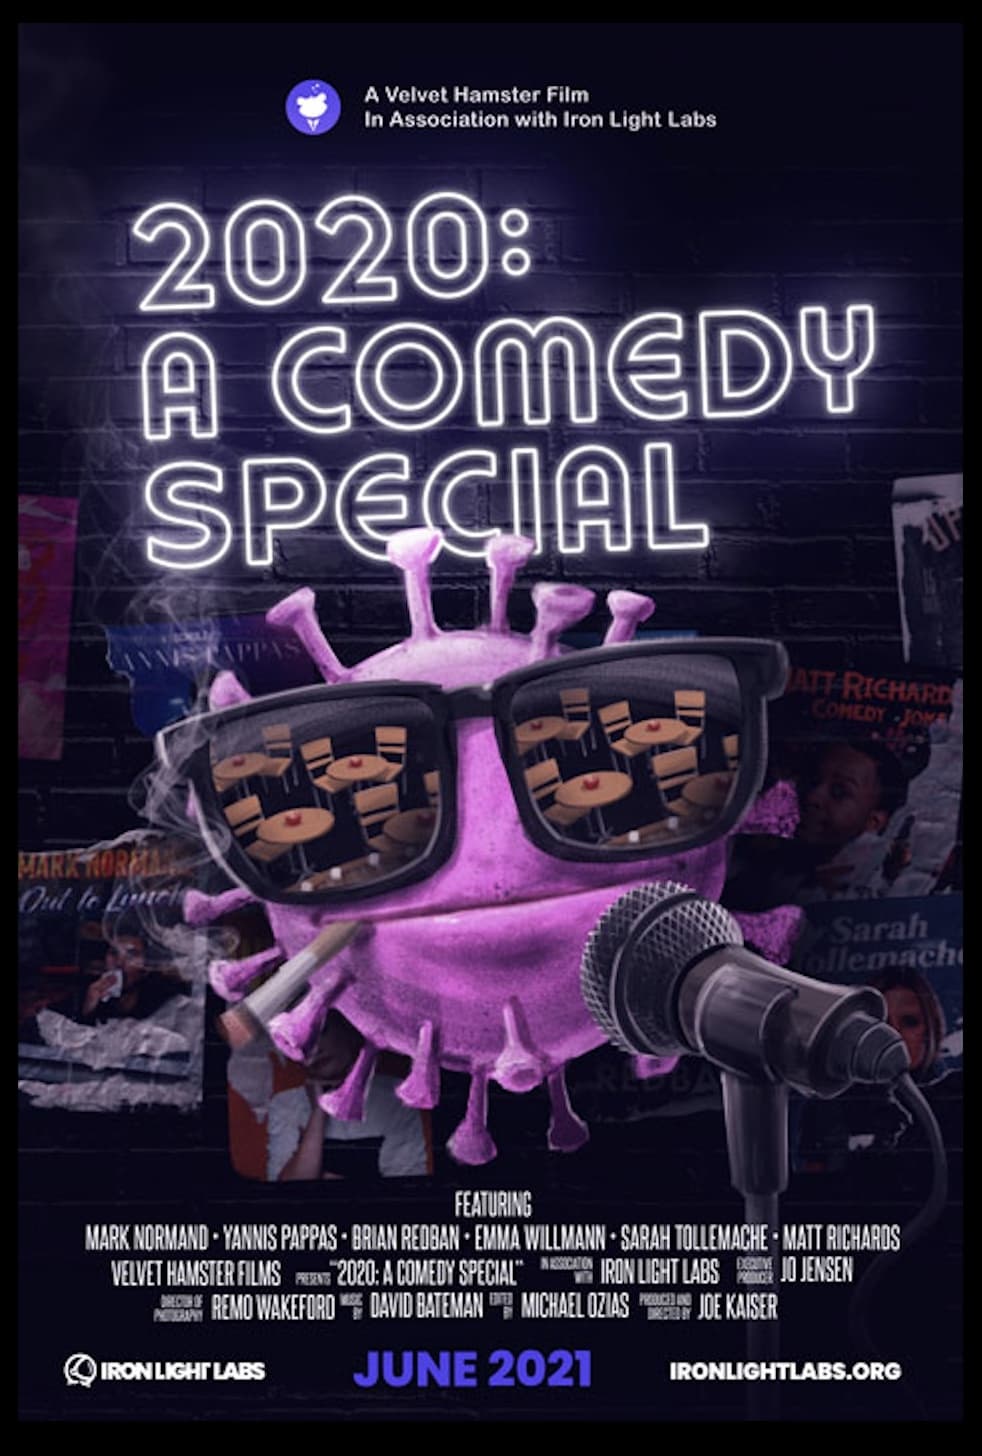 2020: A Comedy Special